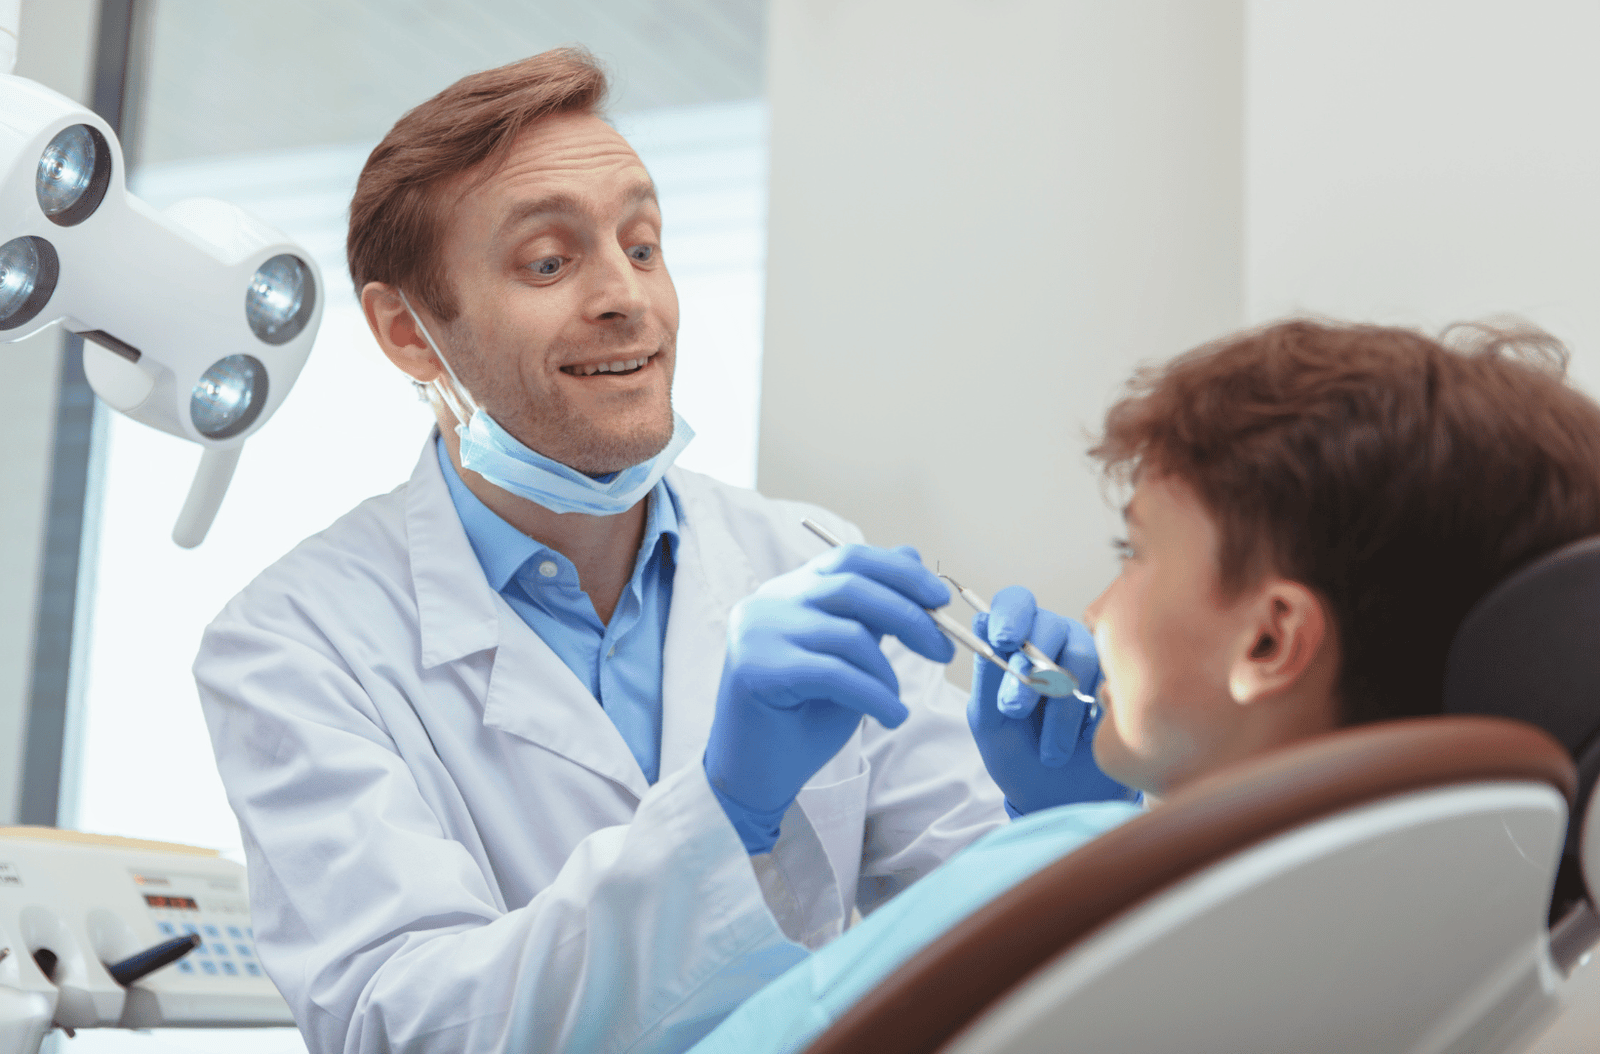 Preventative Dental Care Can Save You Money